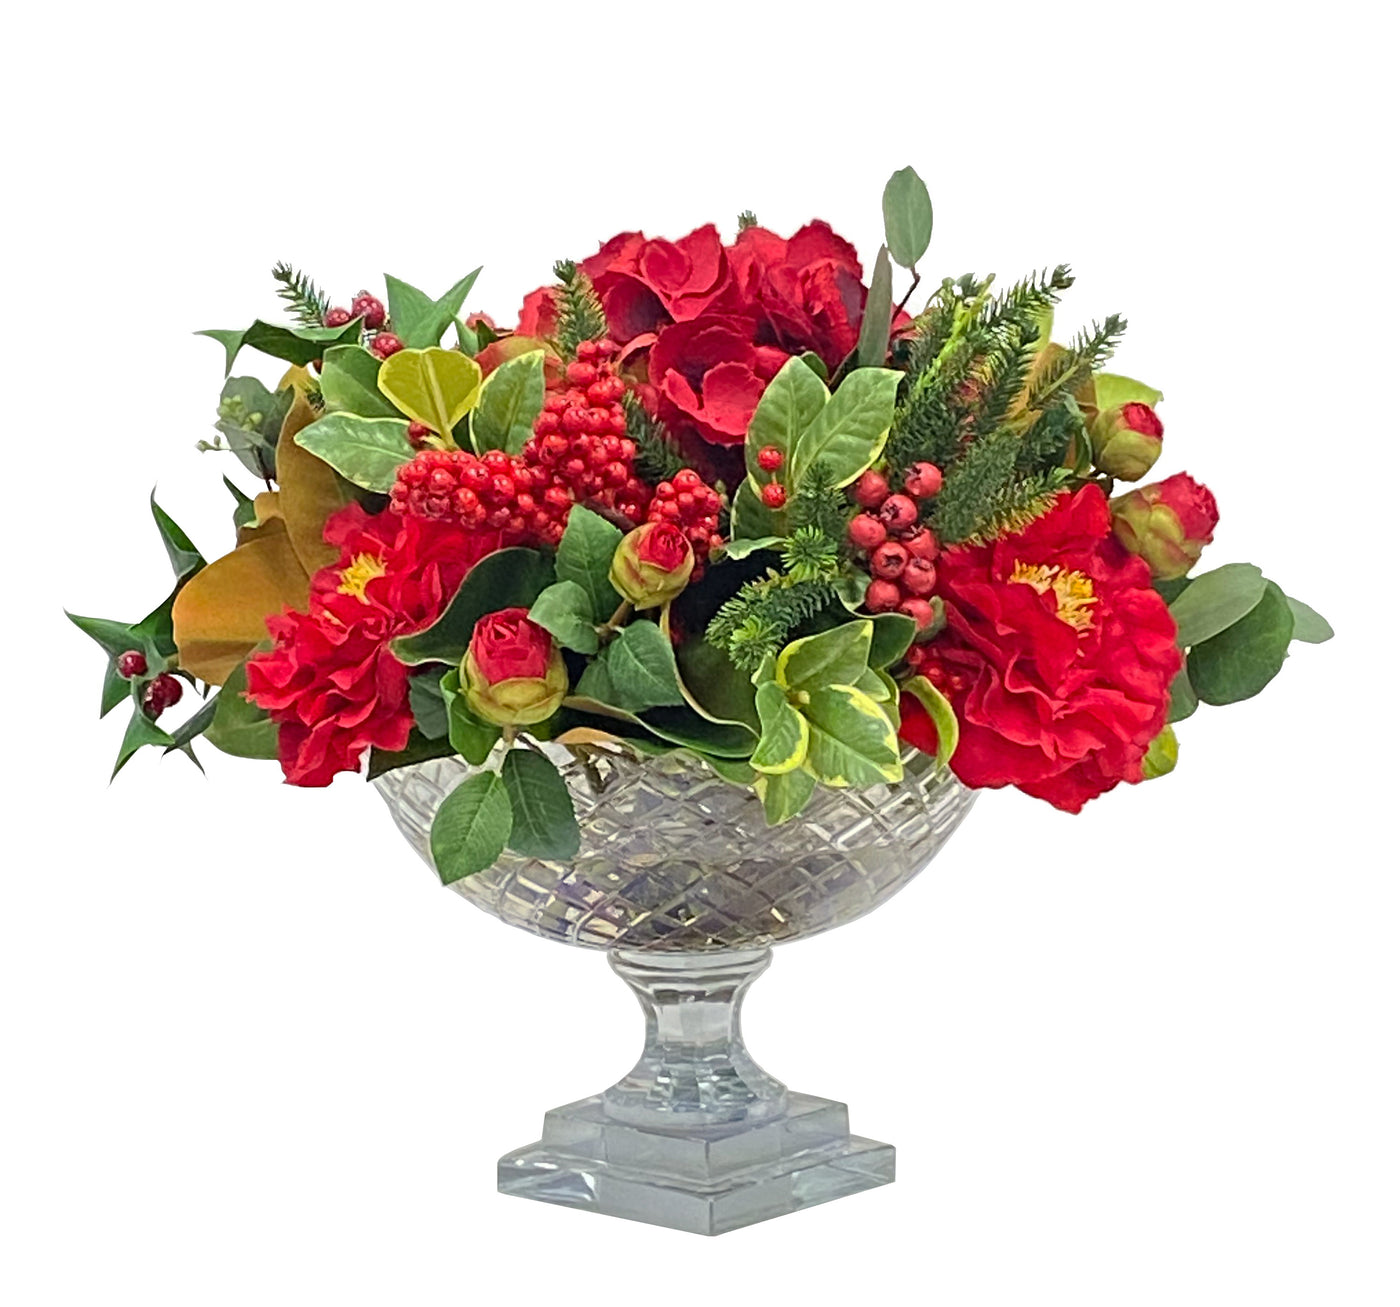 Premium quality holiday faux floral arrangement